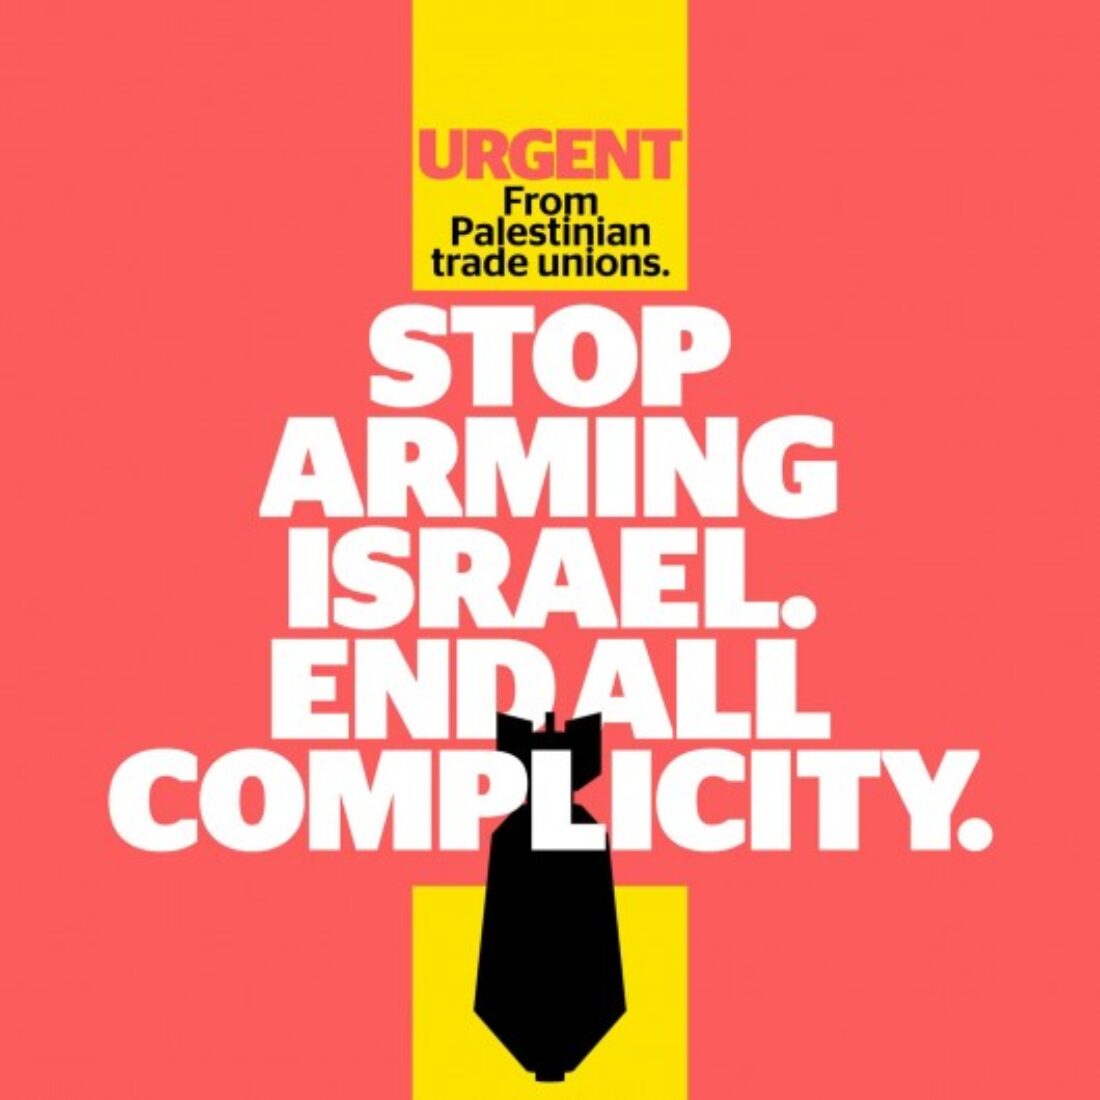 Llamamiento urgente de los sindicatos palestinos: Acabar con toda complicidad, dejar de armar a Israel